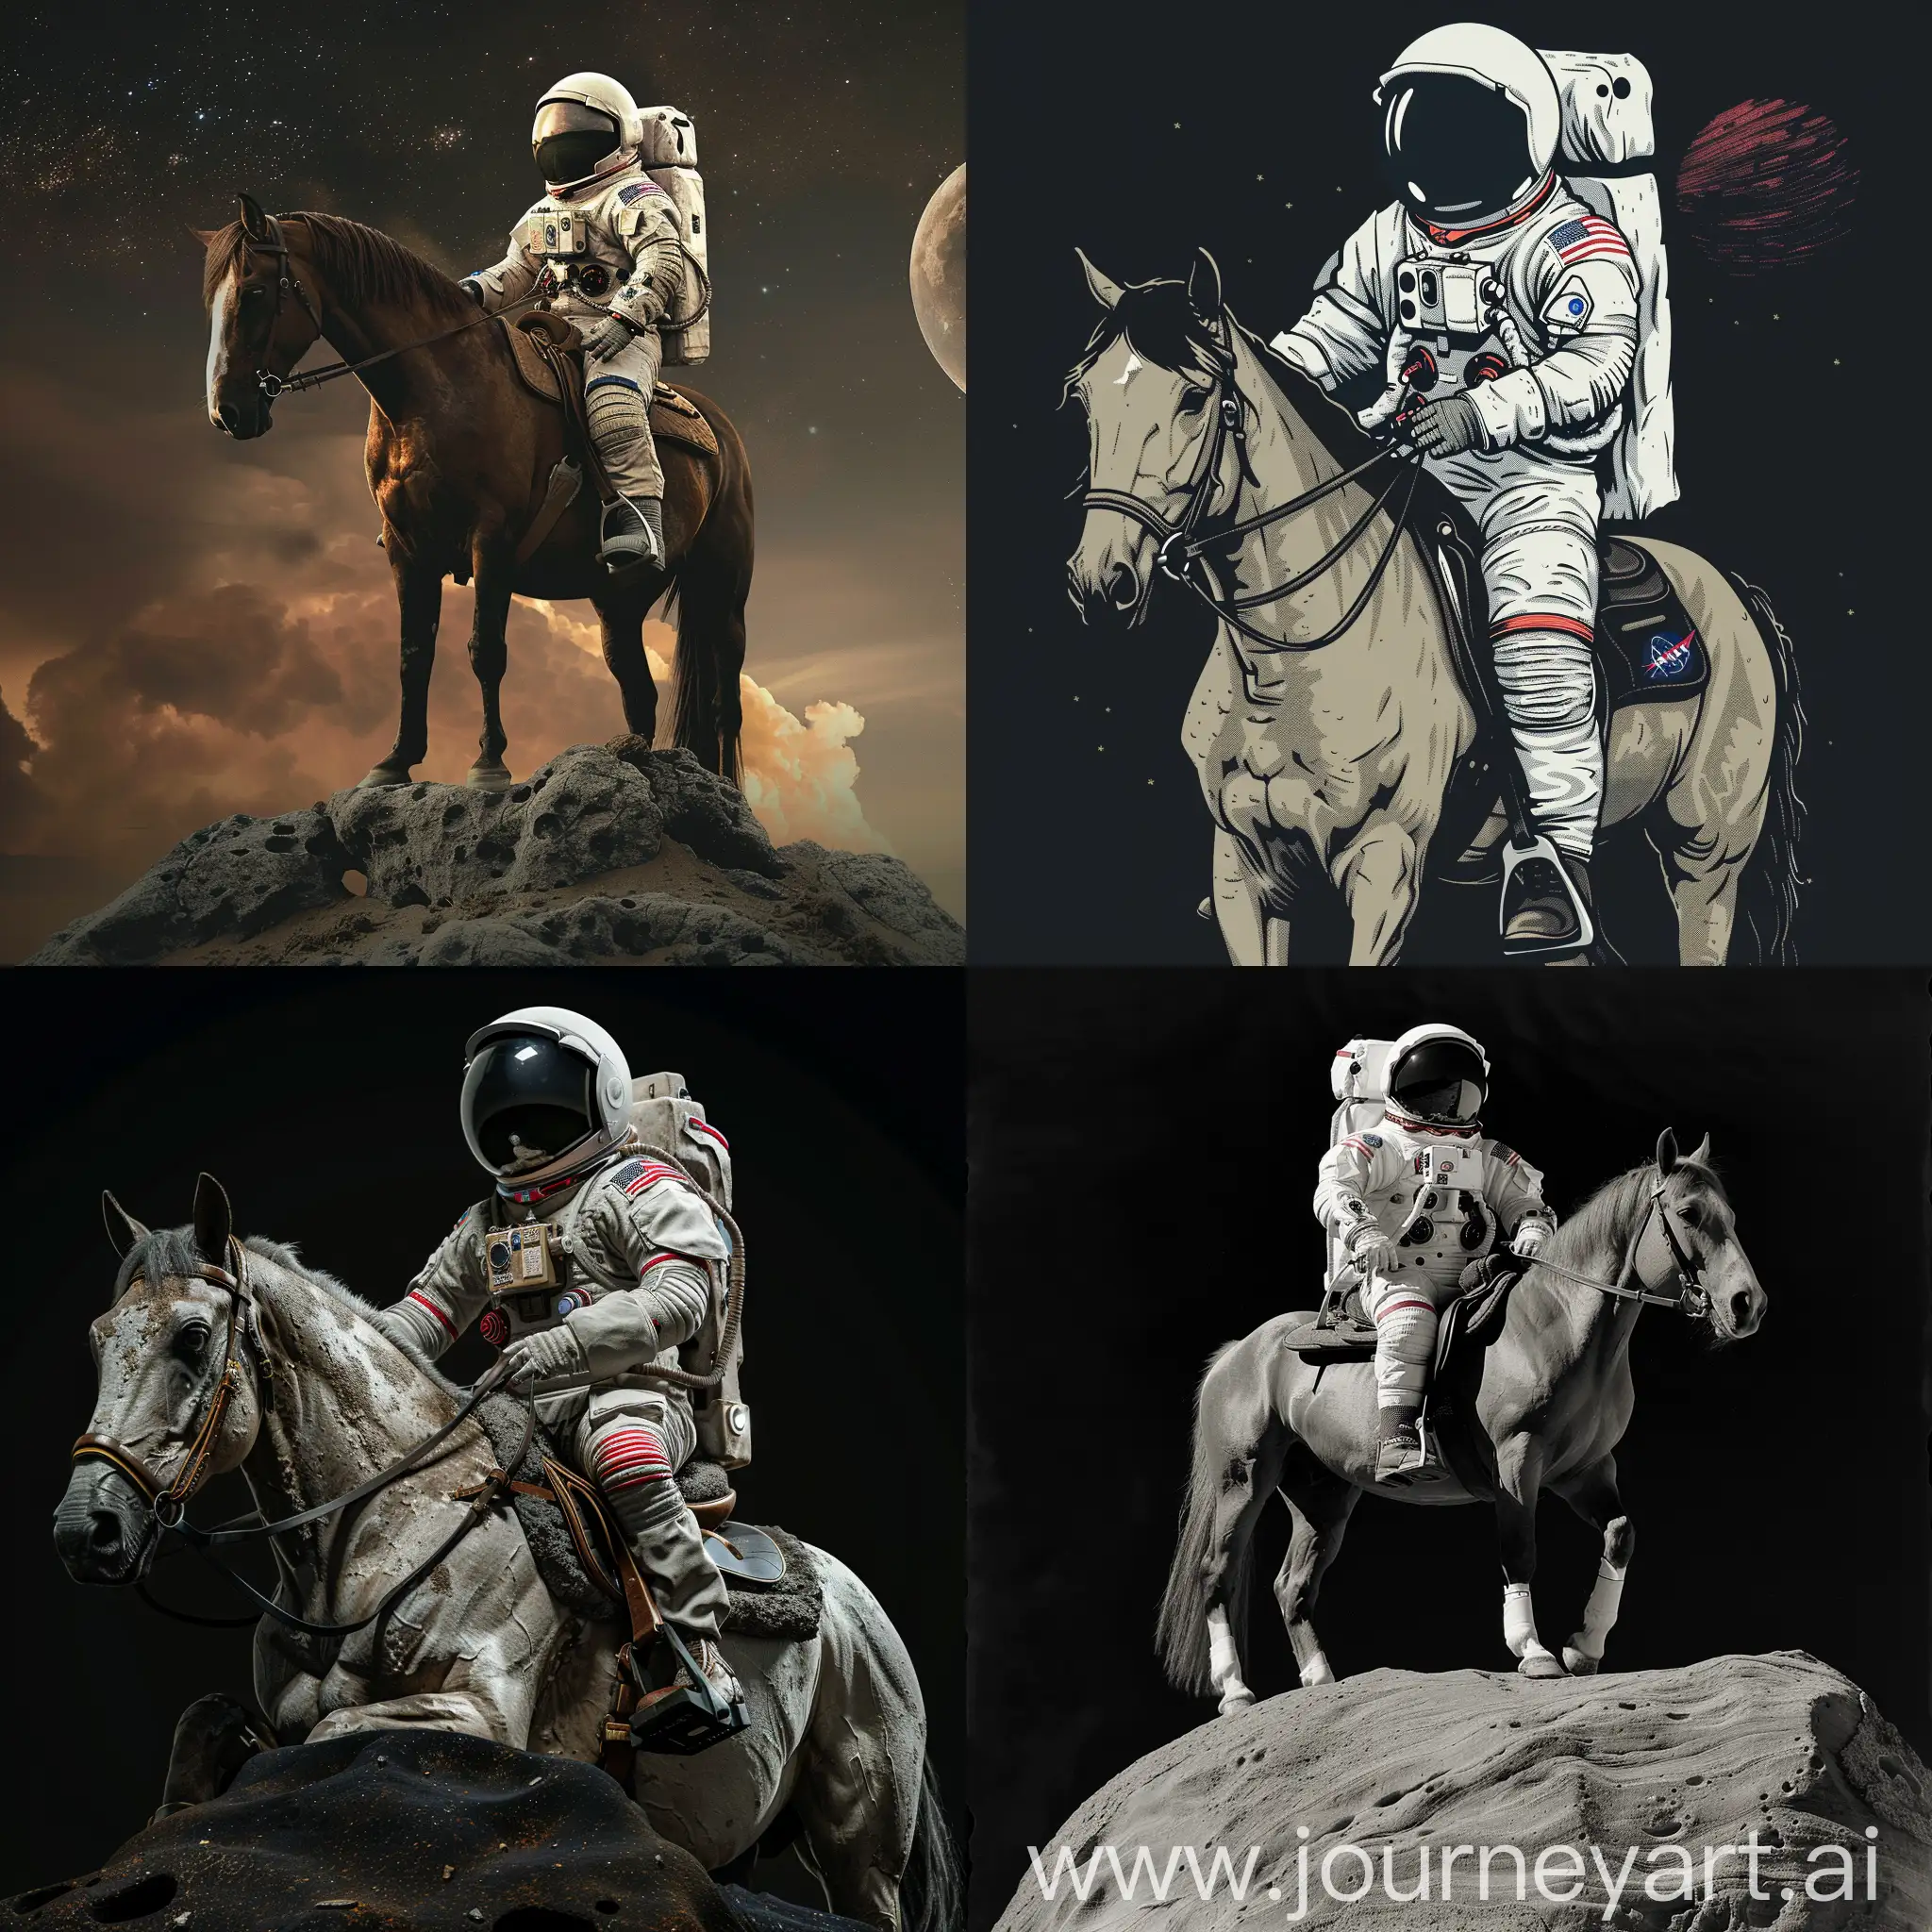 Astronaut on horse